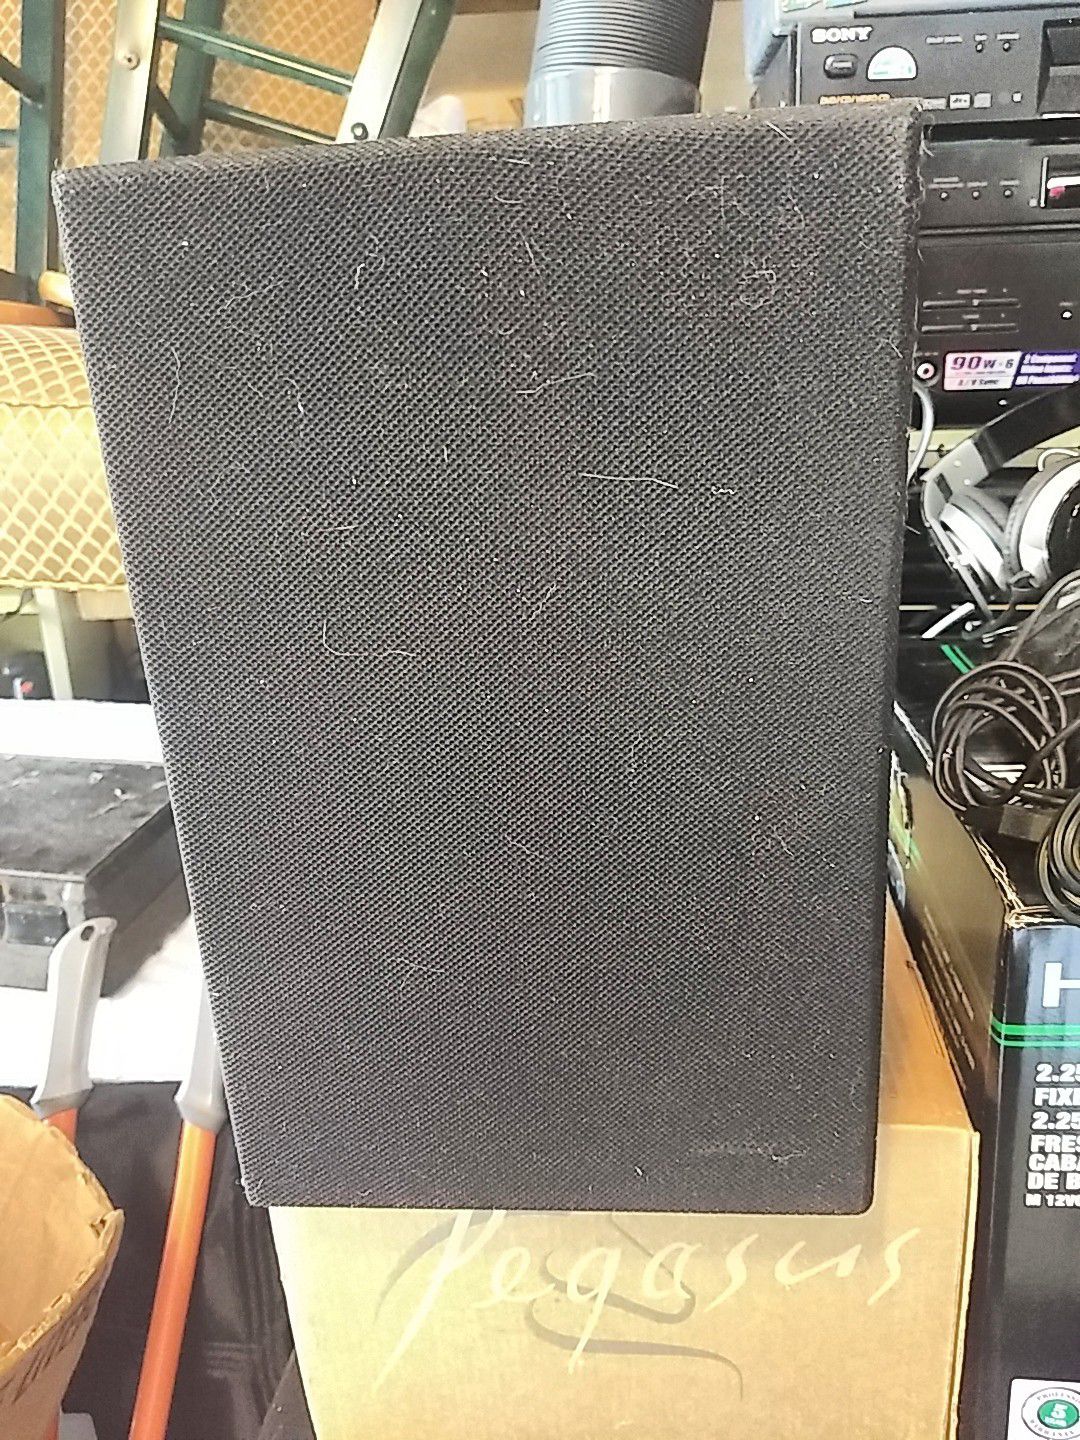 One Bose model 21 Speaker $10